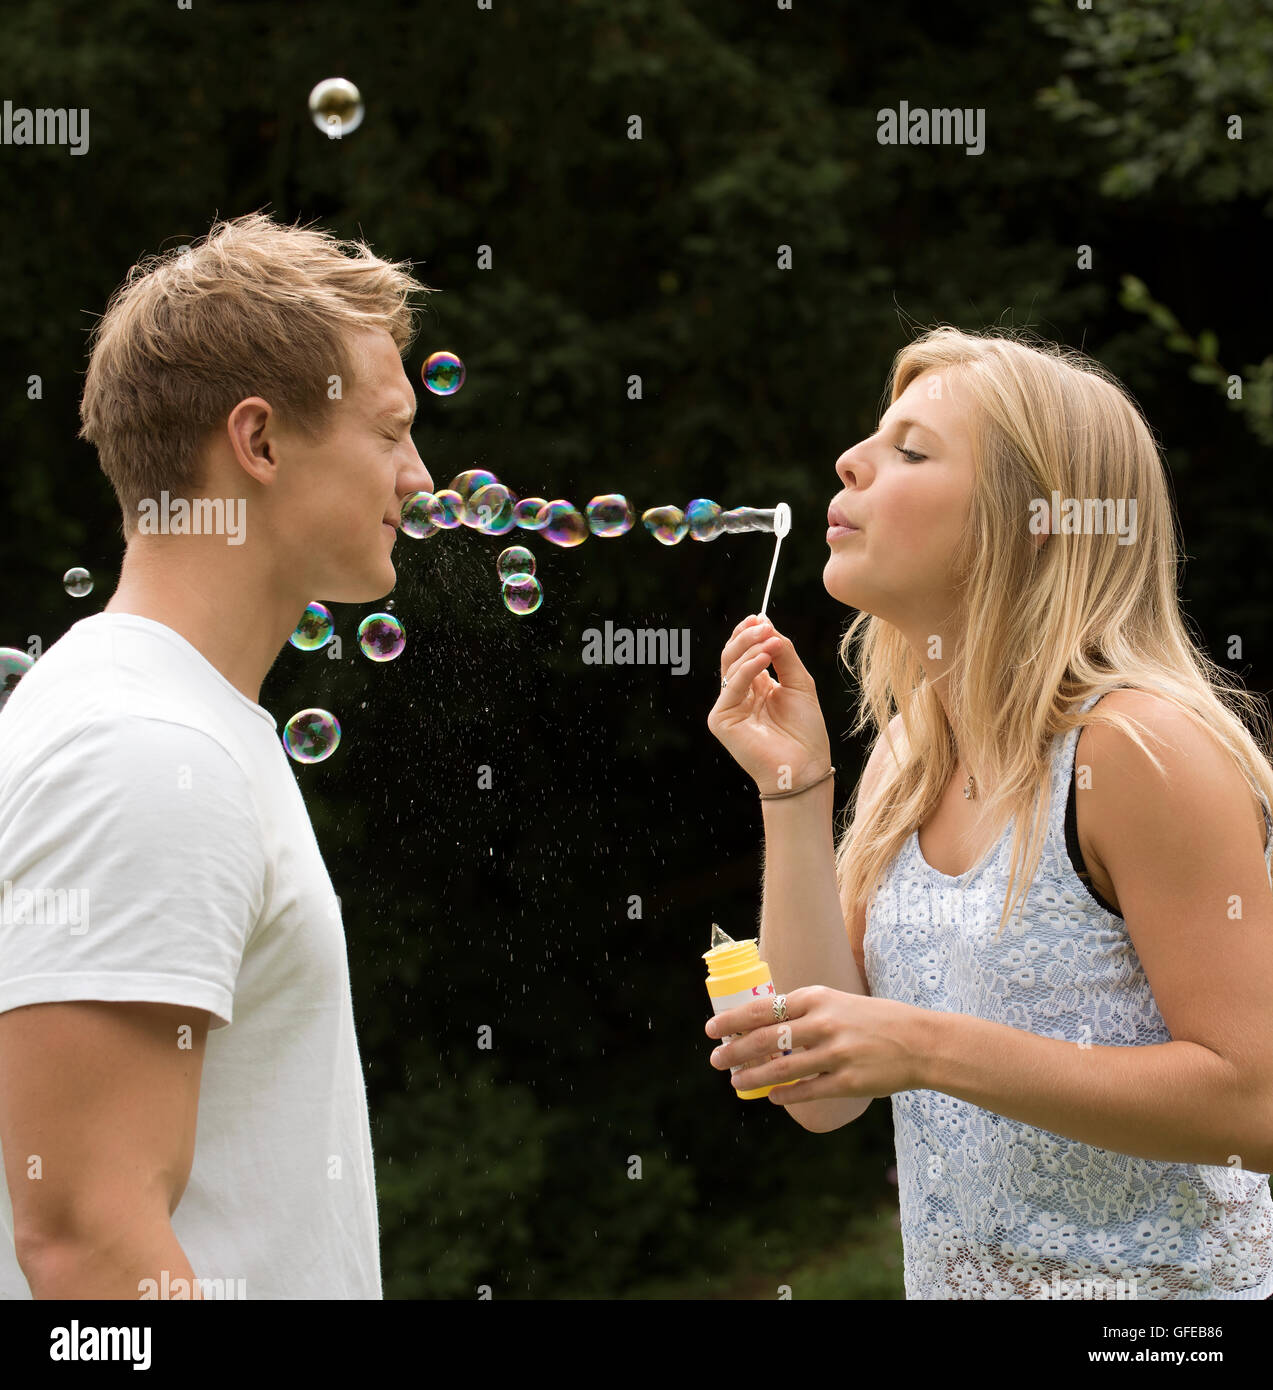 TEENAGER BLOWING BUBBLES A teenage Girl bläst Seifenblasen bei ihrem Freund Stockfoto